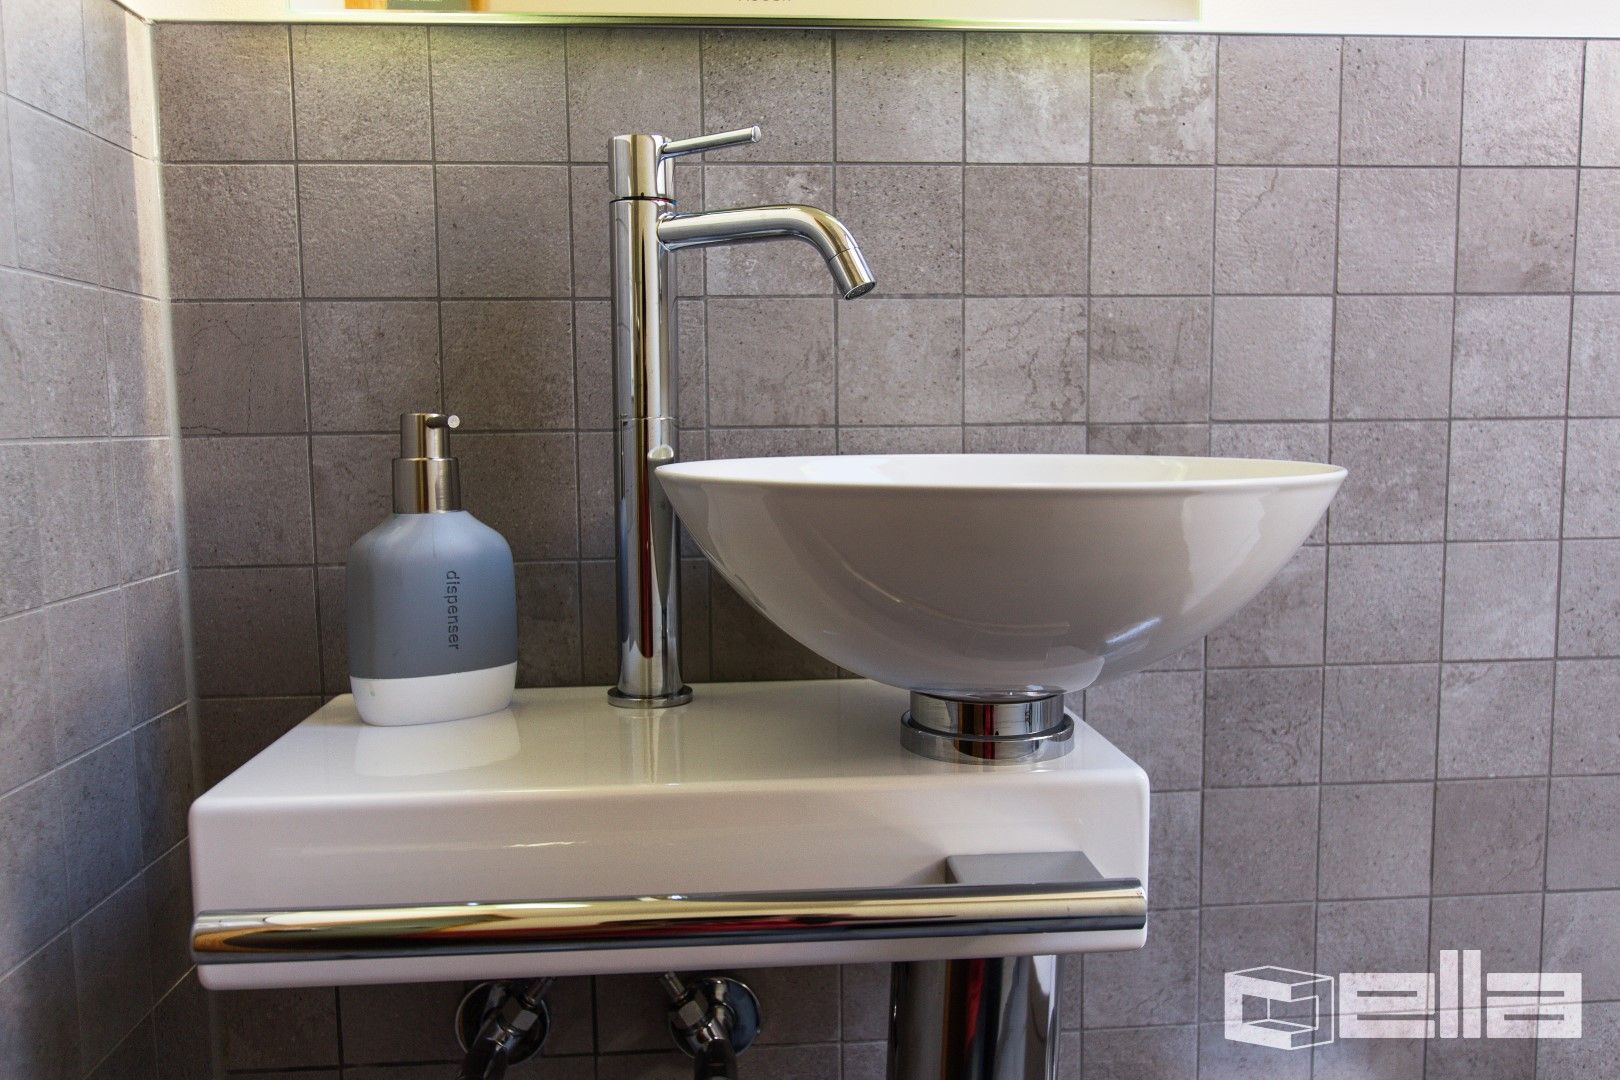 Stilvolles Gäste-WC mit Mosaikfliesen in Gauting, Cella GmbH Cella GmbH Modern bathroom Tiles